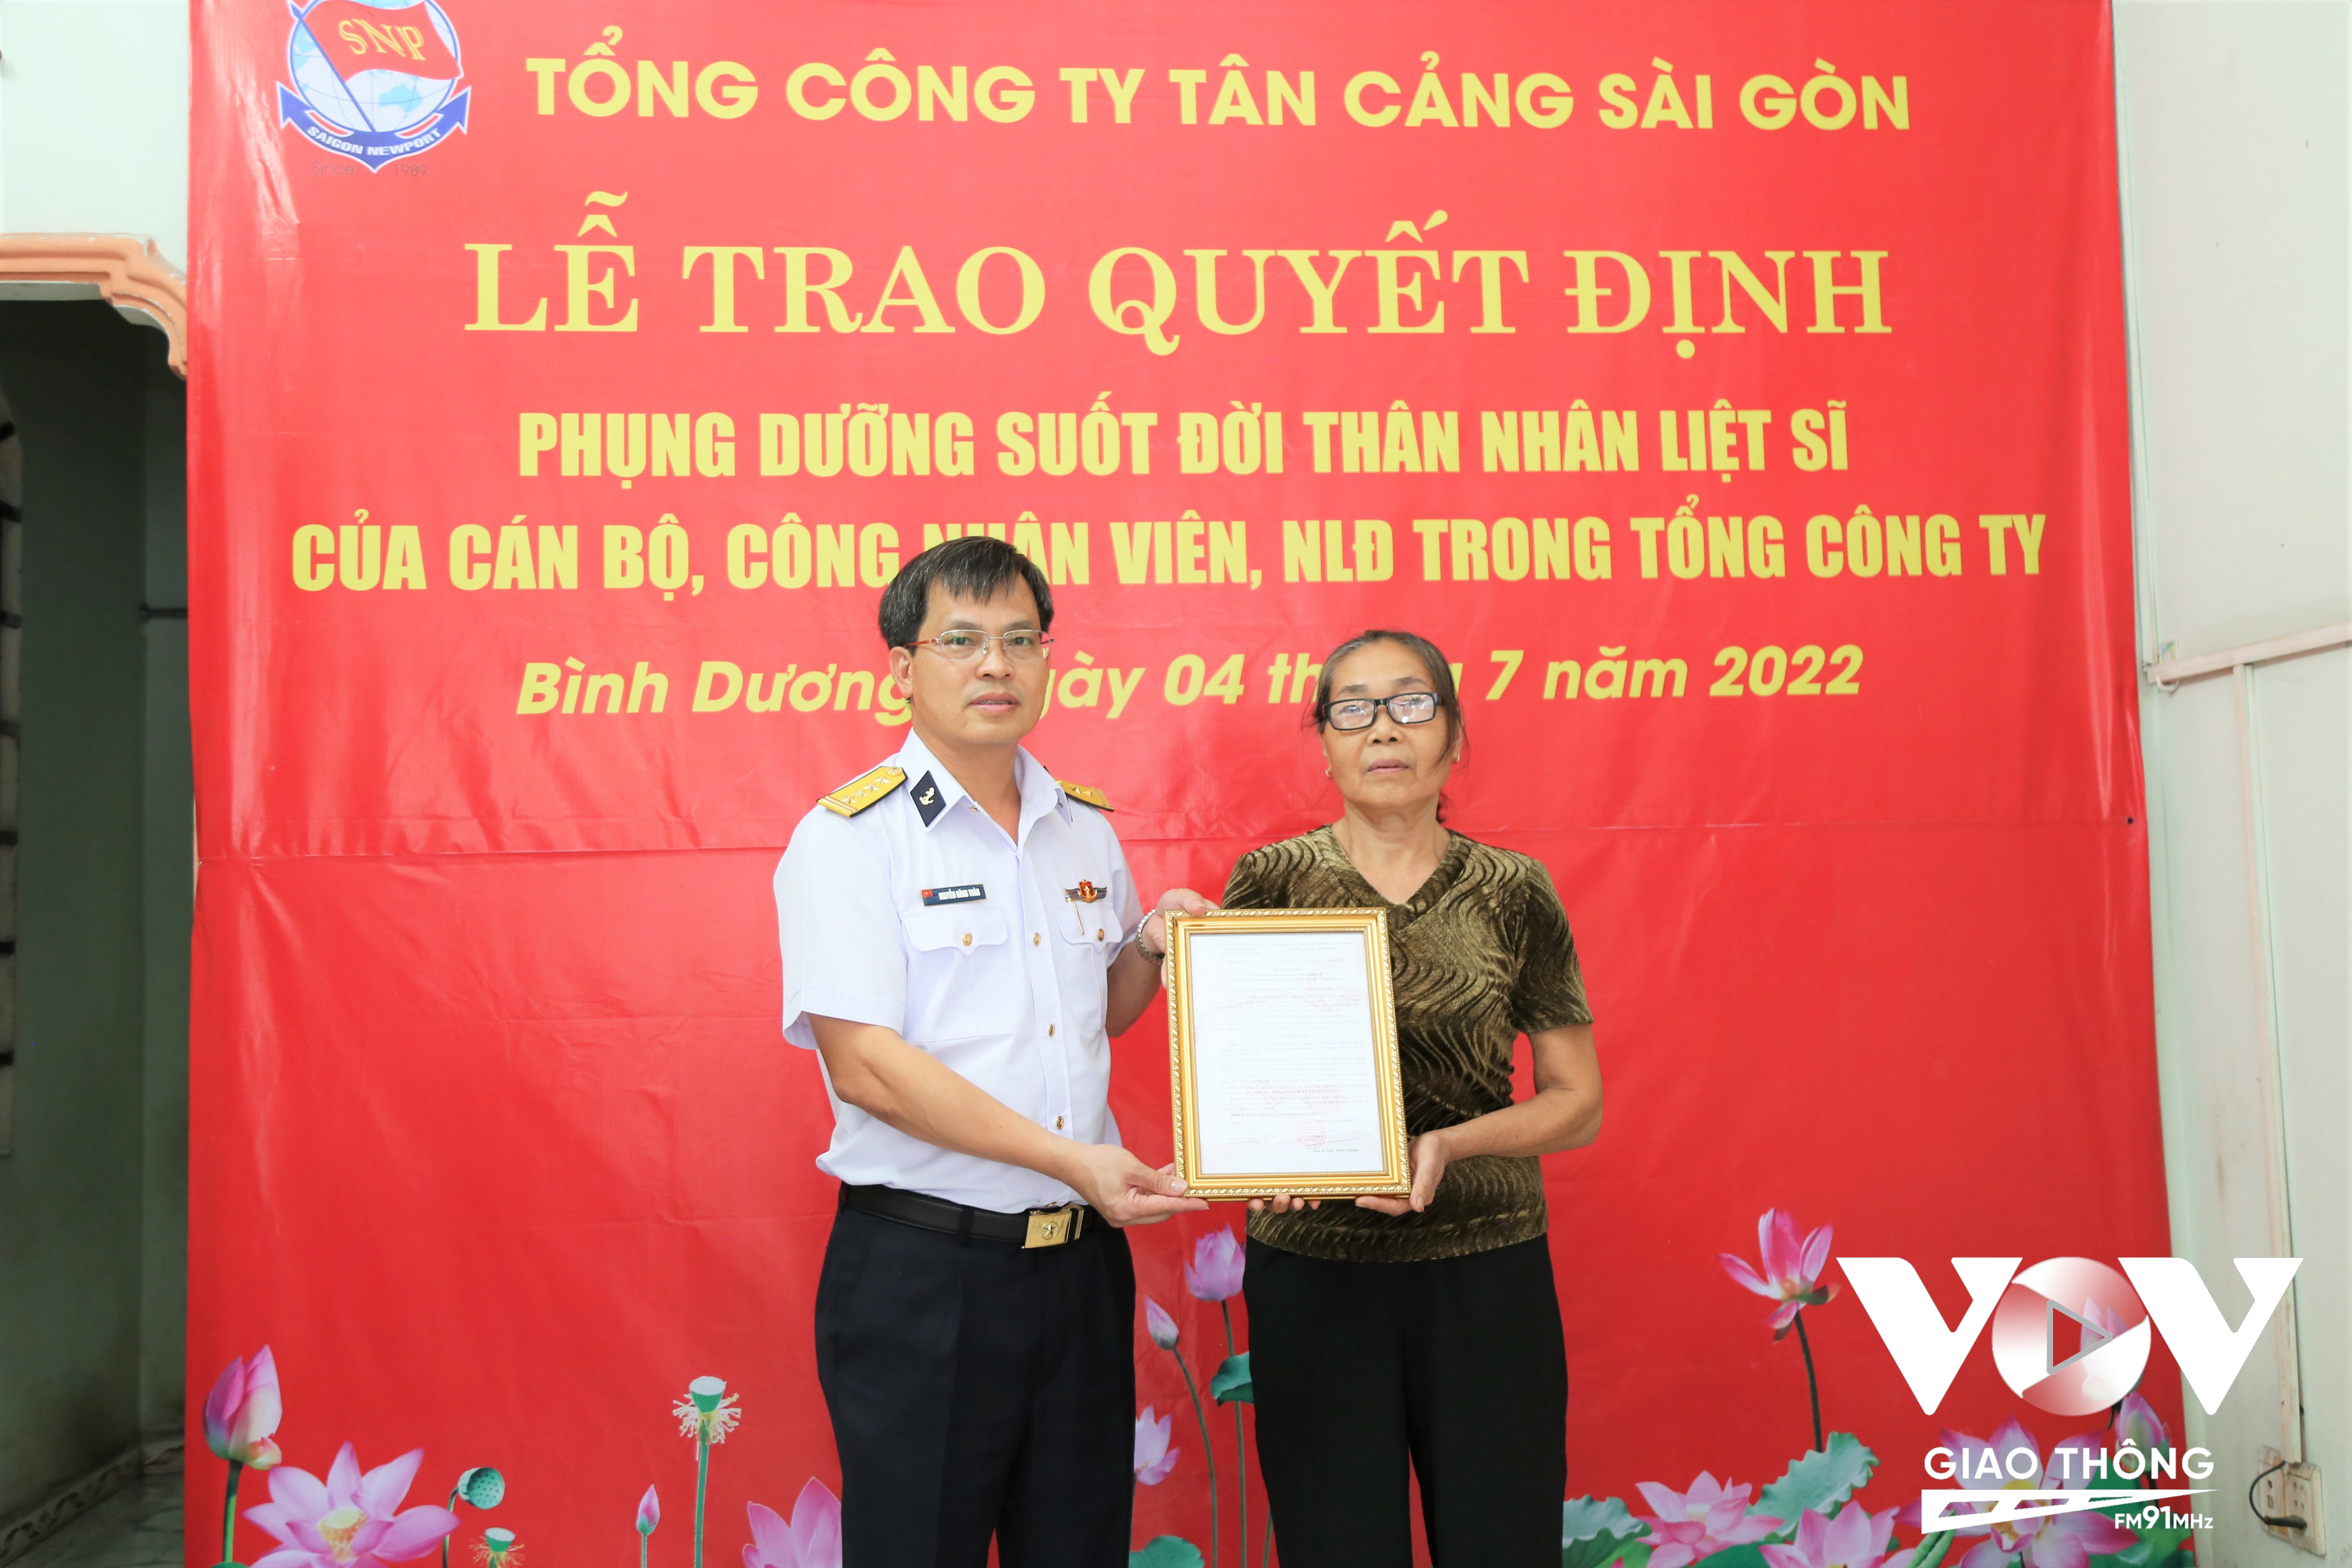 Đại tá Nguyễn Năng Toàn, Bí thư Đảng ủy, Chủ tịch Tổng công ty Tân Cảng Sài Gòn trao Quyết định phụng dưỡng vợ liệt sỹ Nguyễn Tiến Vượng.